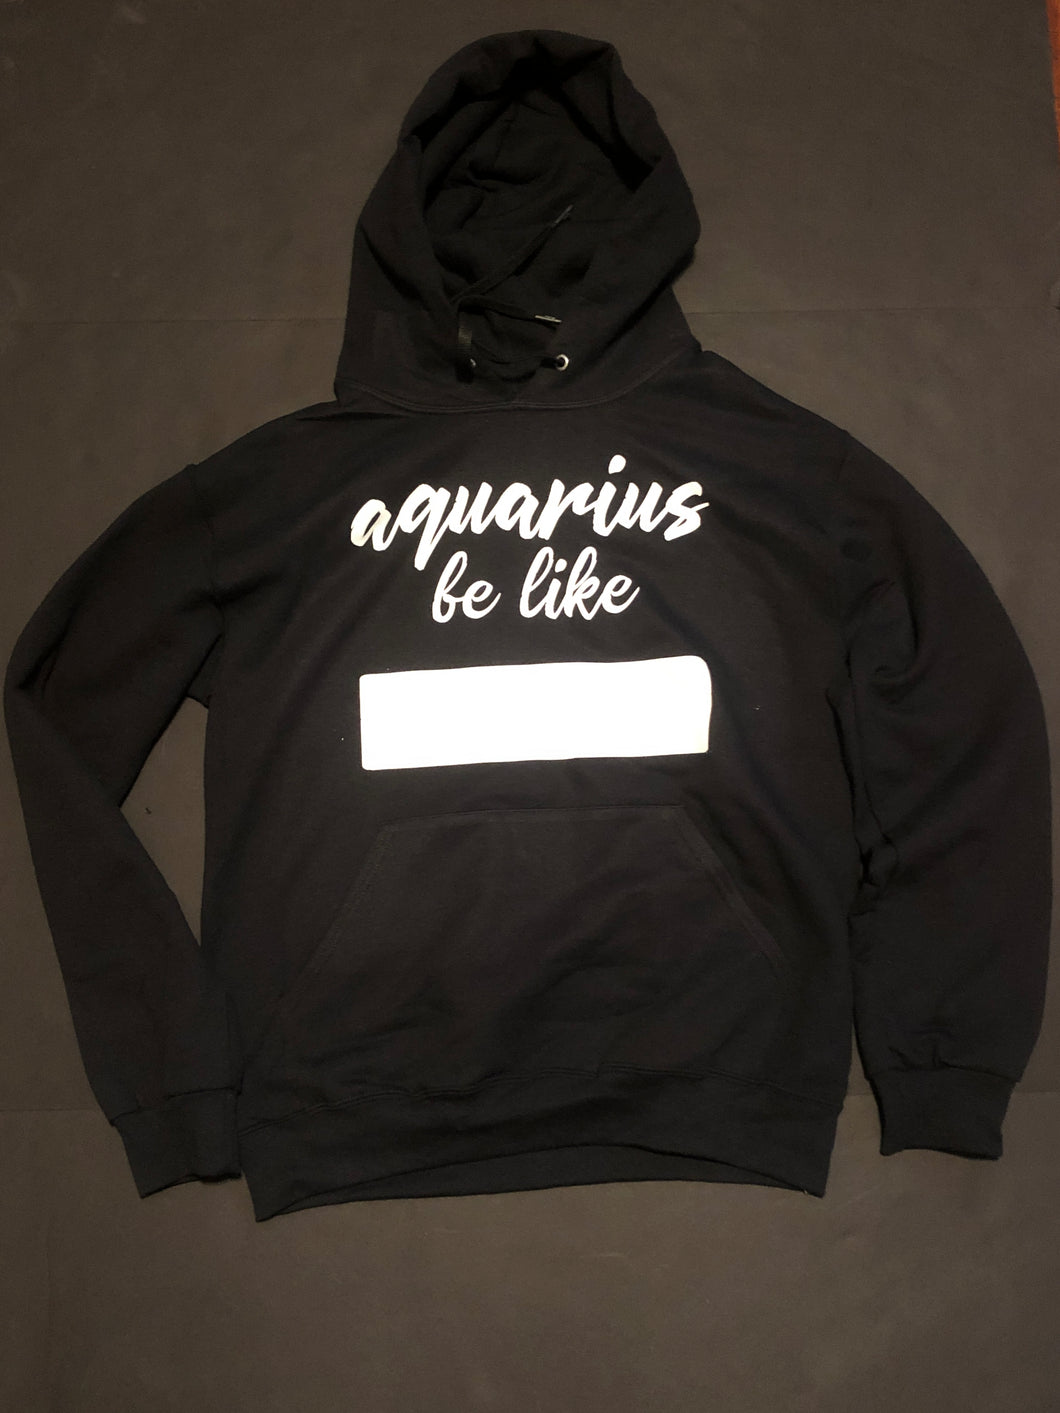 “Aquarius be like” Pullover hoodie in Black